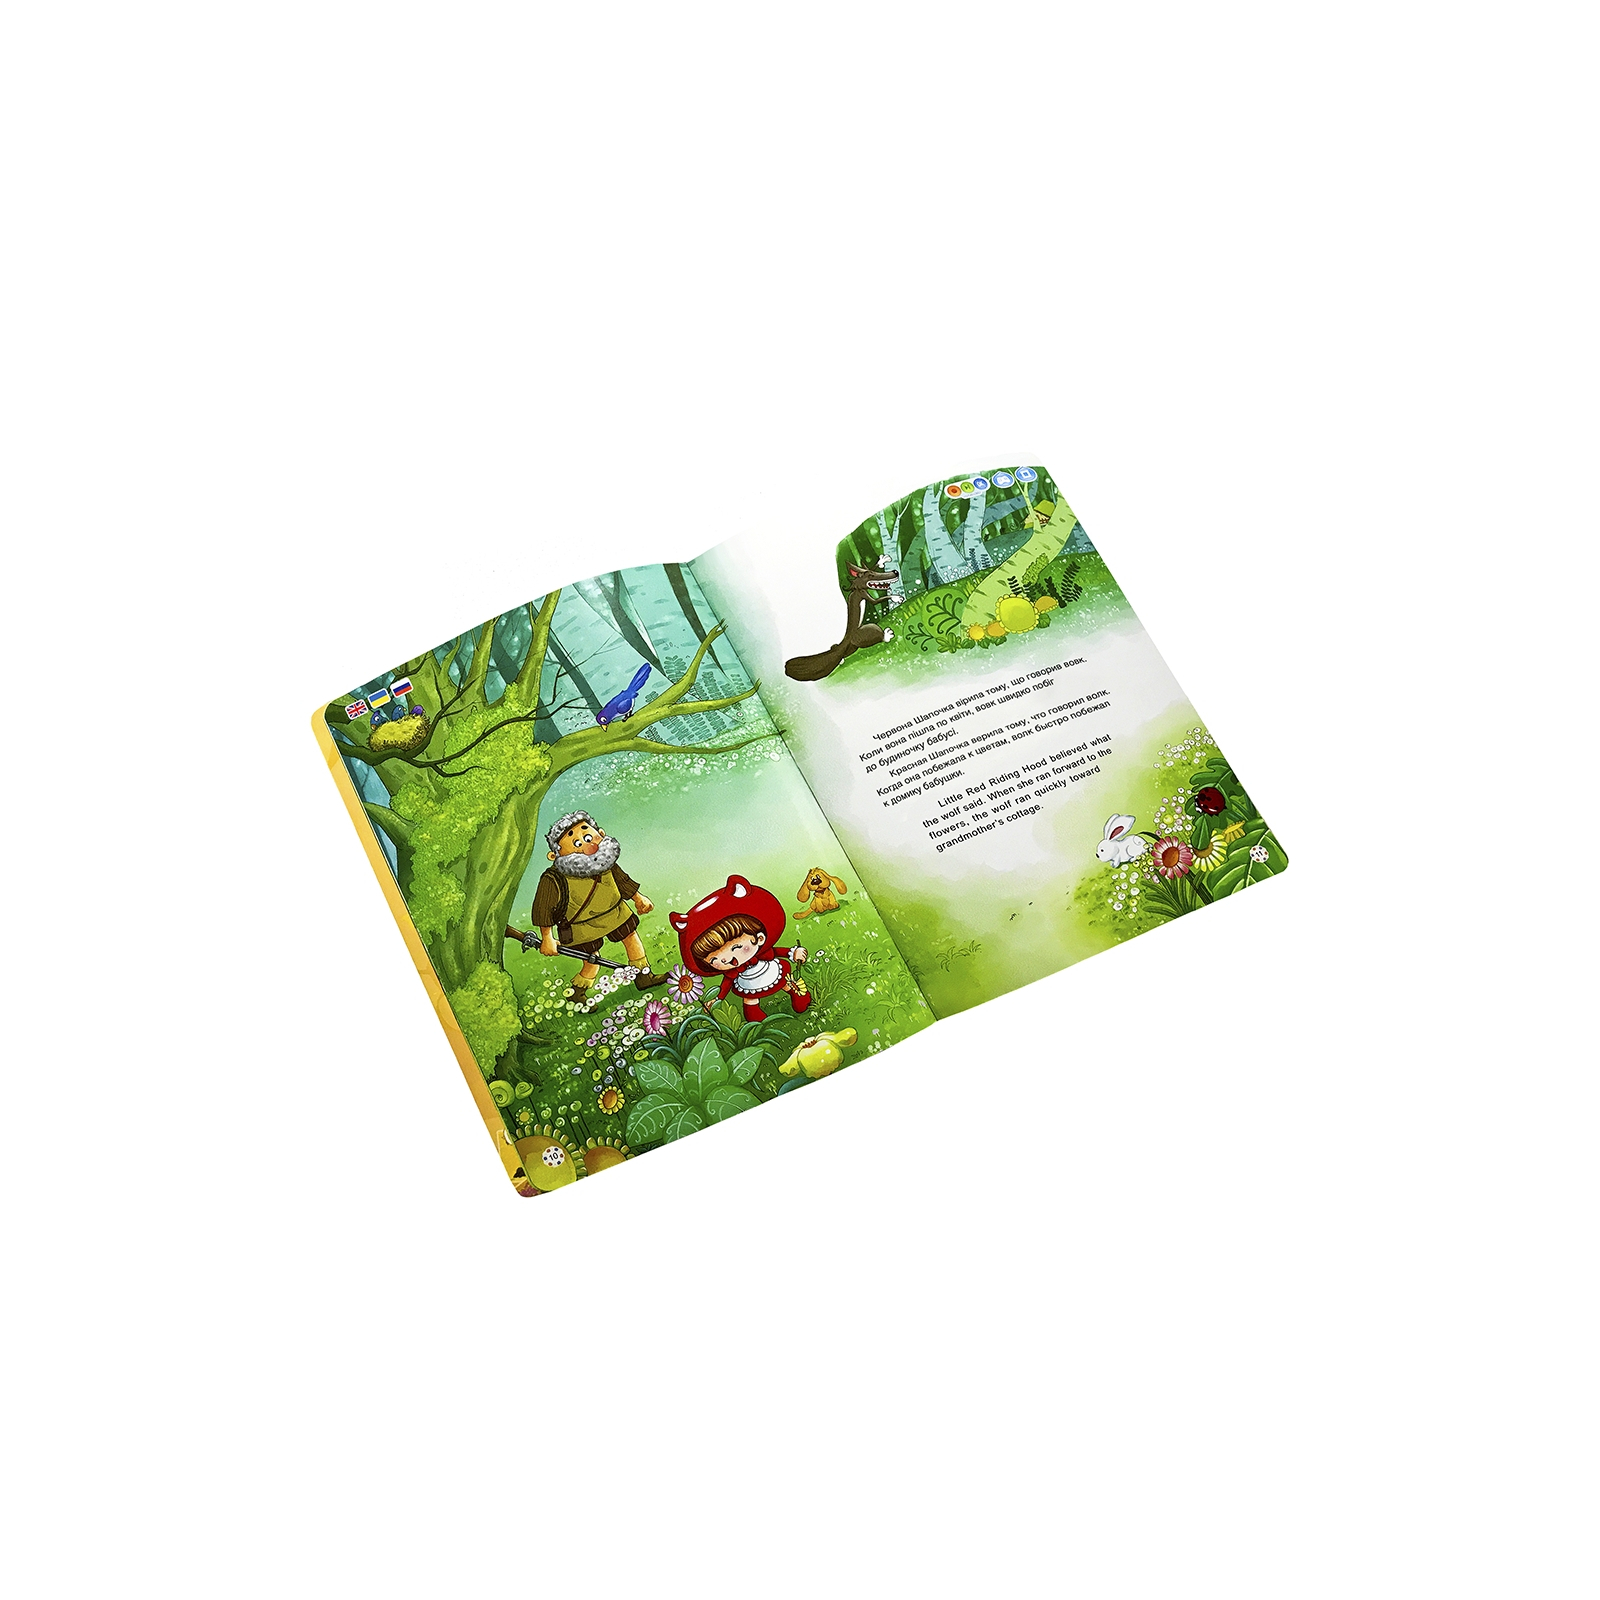 Интерактивная игрушка Smart Koala развивающая книга Fairy Tales (Season1) 4 книги (SKSFTS1) изображение 8